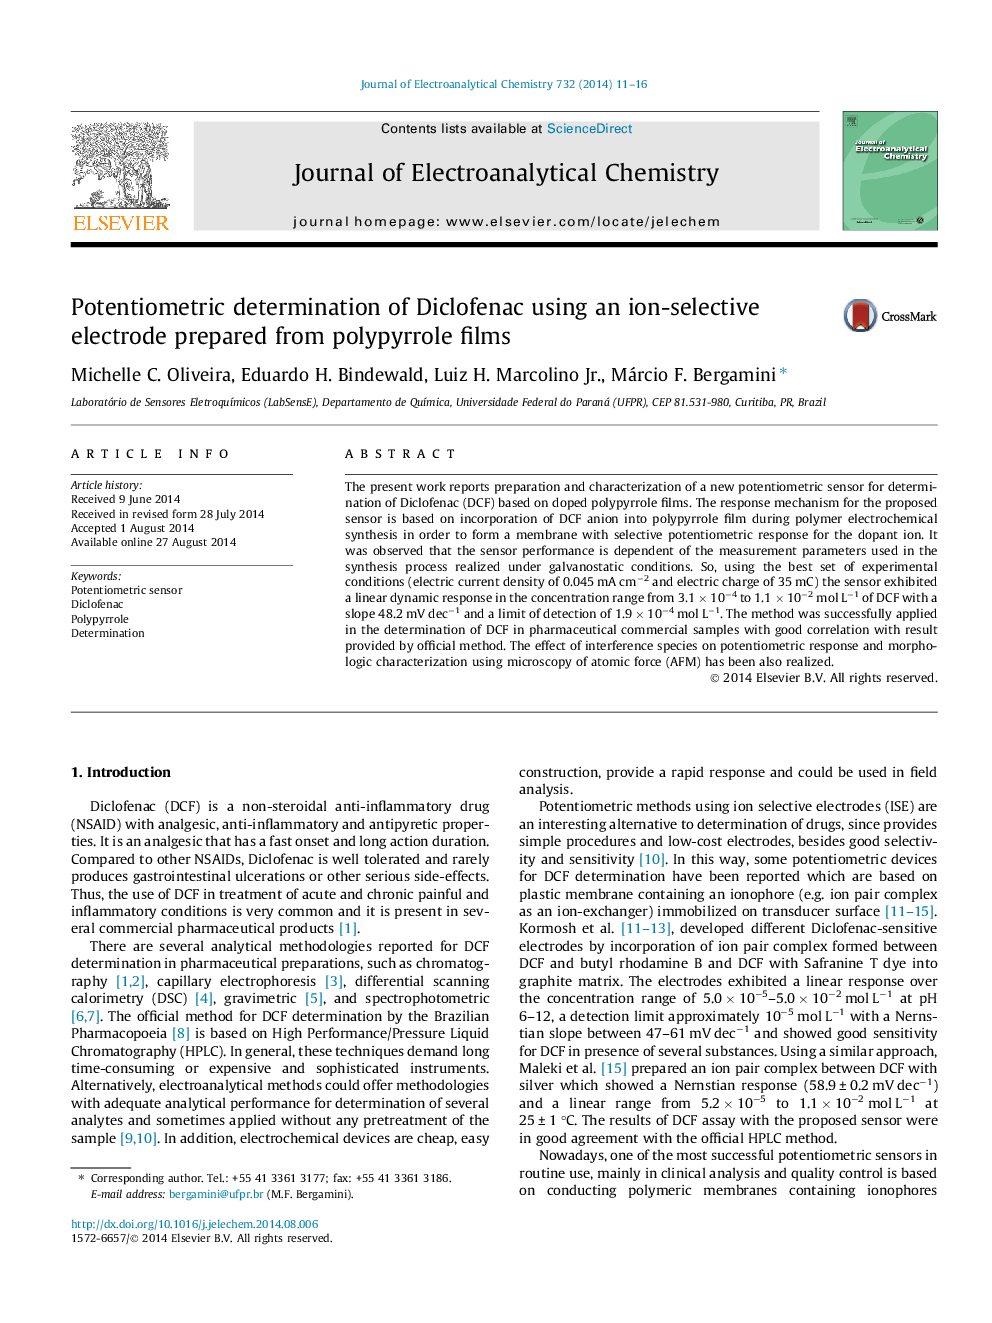 تعیین پتانسیومتری دیکلوفناک با استفاده از یک الکترودهای انتخابی یونی تهیه شده از فیلم های پلی پیلر 